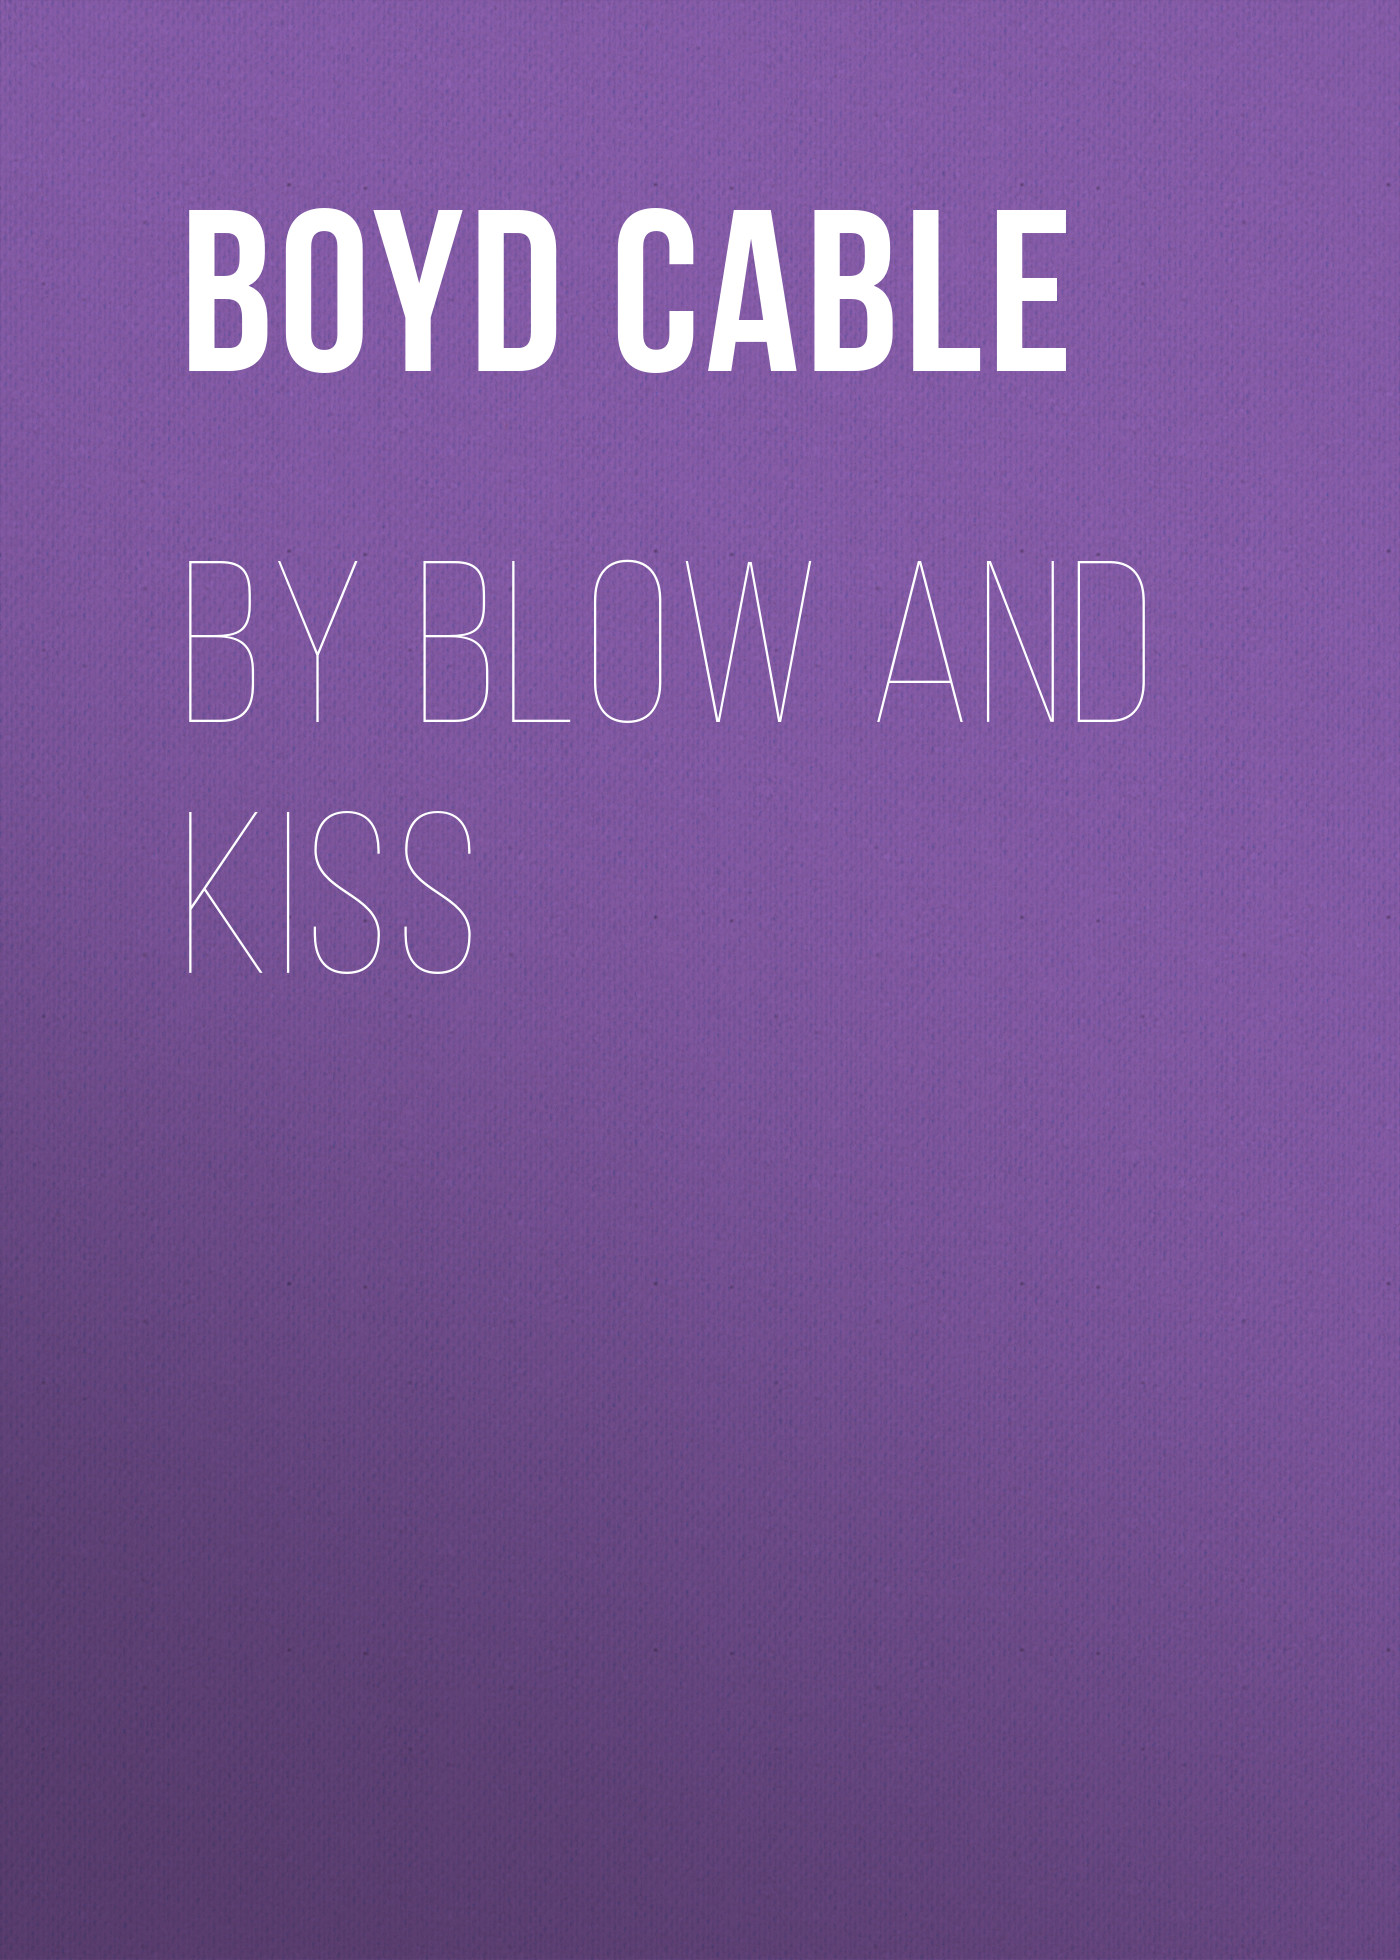 Книга By Blow and Kiss из серии , созданная Boyd Cable, может относится к жанру Зарубежная старинная литература, Зарубежная классика. Стоимость электронной книги By Blow and Kiss с идентификатором 24172060 составляет 0 руб.